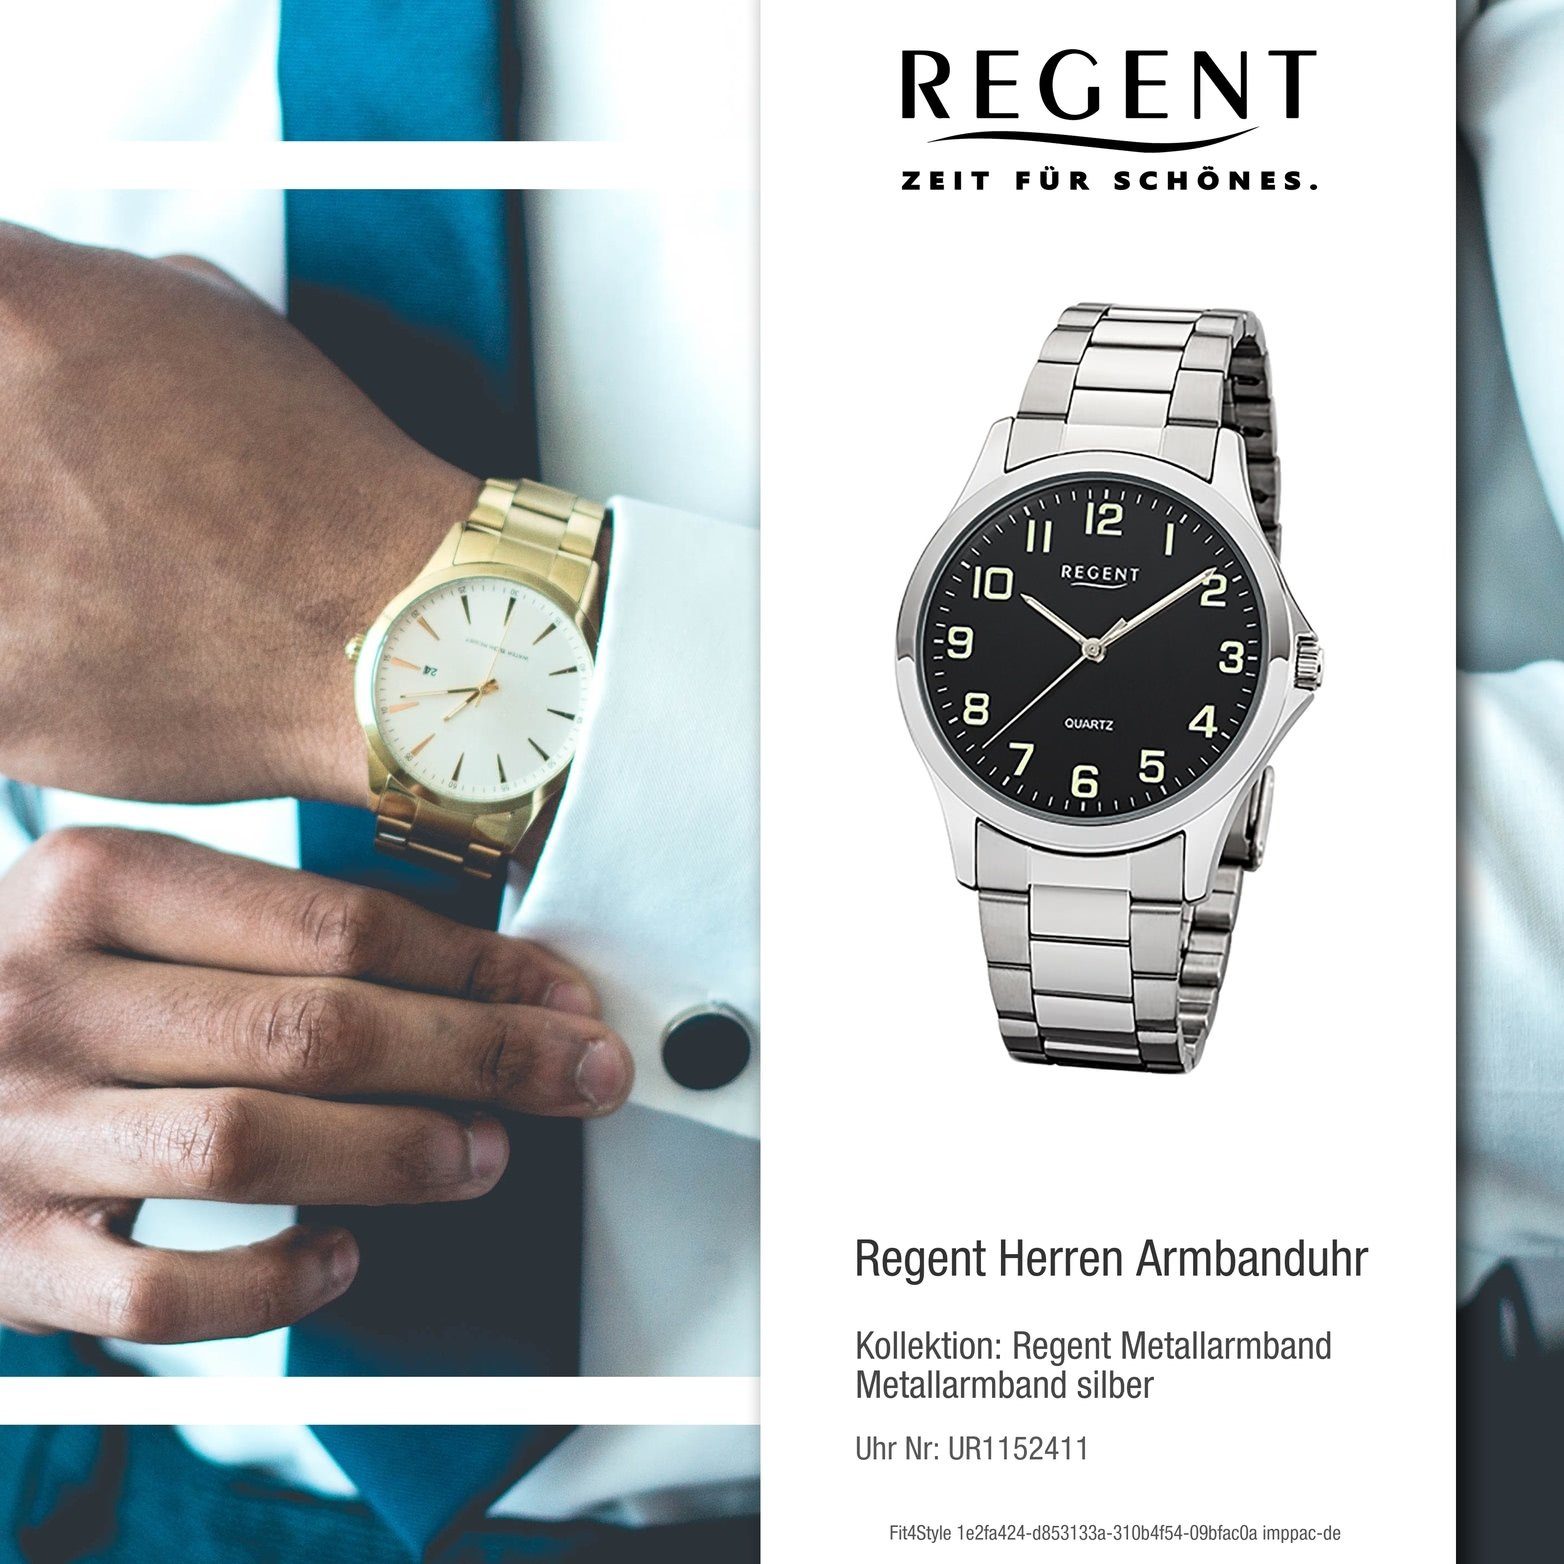 Quarzuhr Regent rundes Gehäuse, Herrenuhr Uhr Regent Metallarmband 39mm) Herren 1152411, (ca. Metall silber, mittel